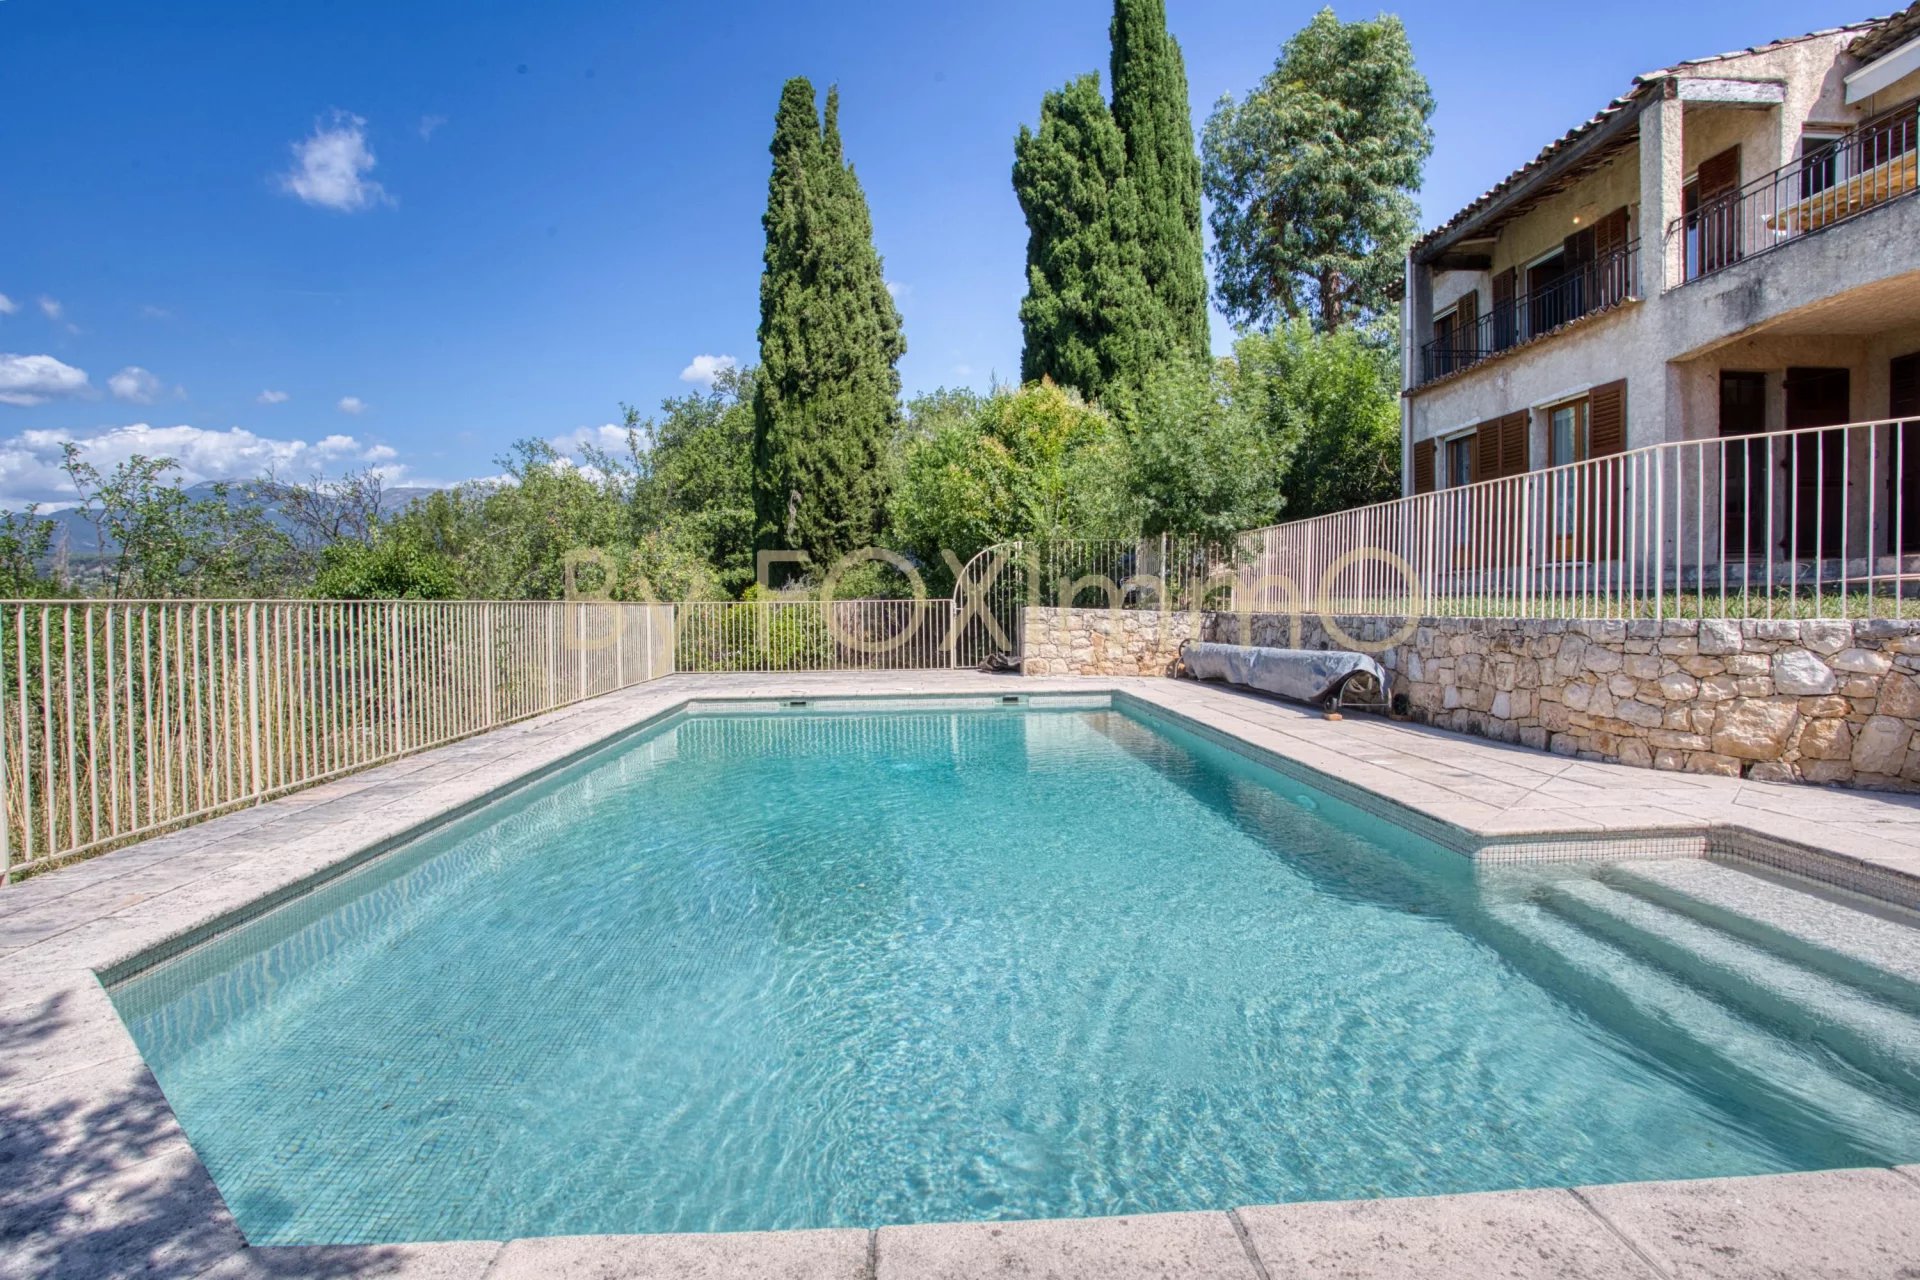 A VENDRE Sur la Côte d'Azur,  Saint Paul de Vence, Villa dominante, vue dégagée, position dominante, terrain plat, piscine